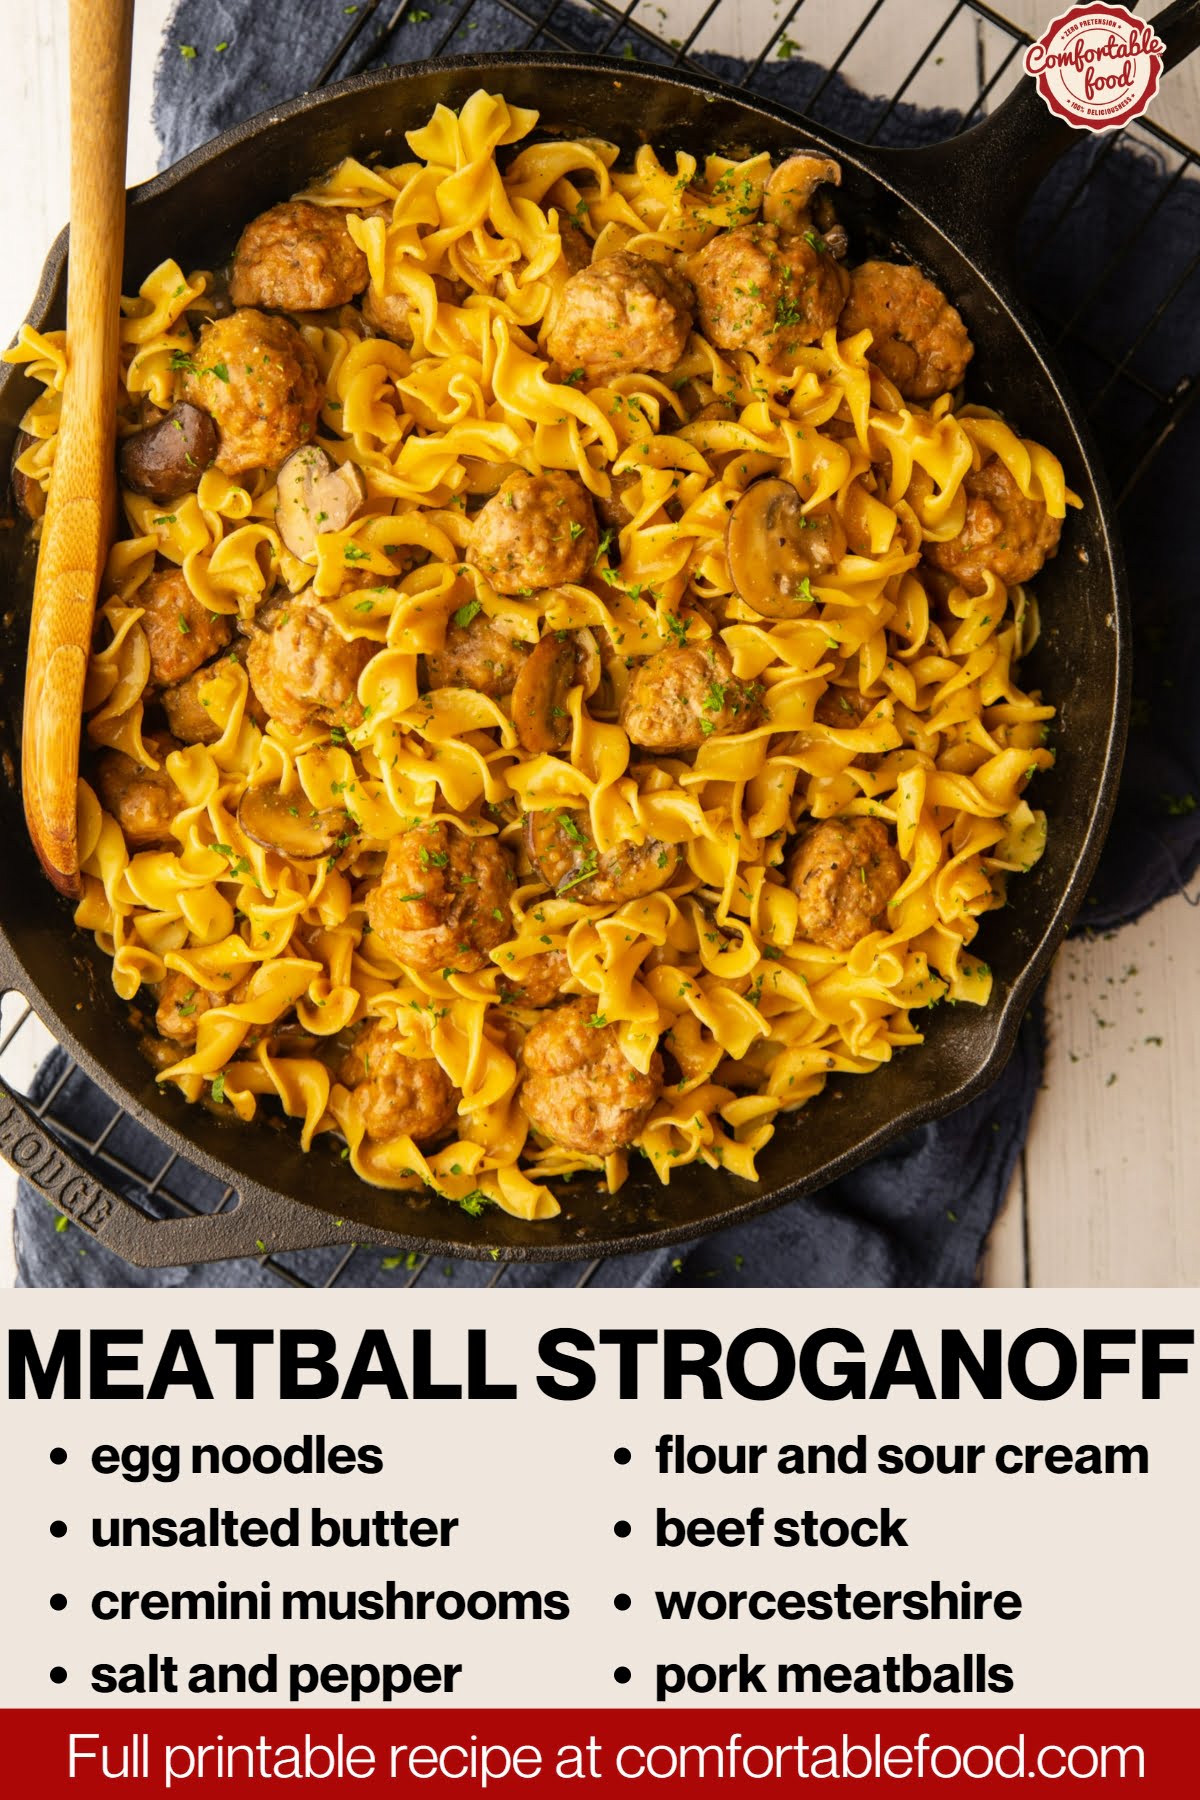 Meatball stroganoff - socials